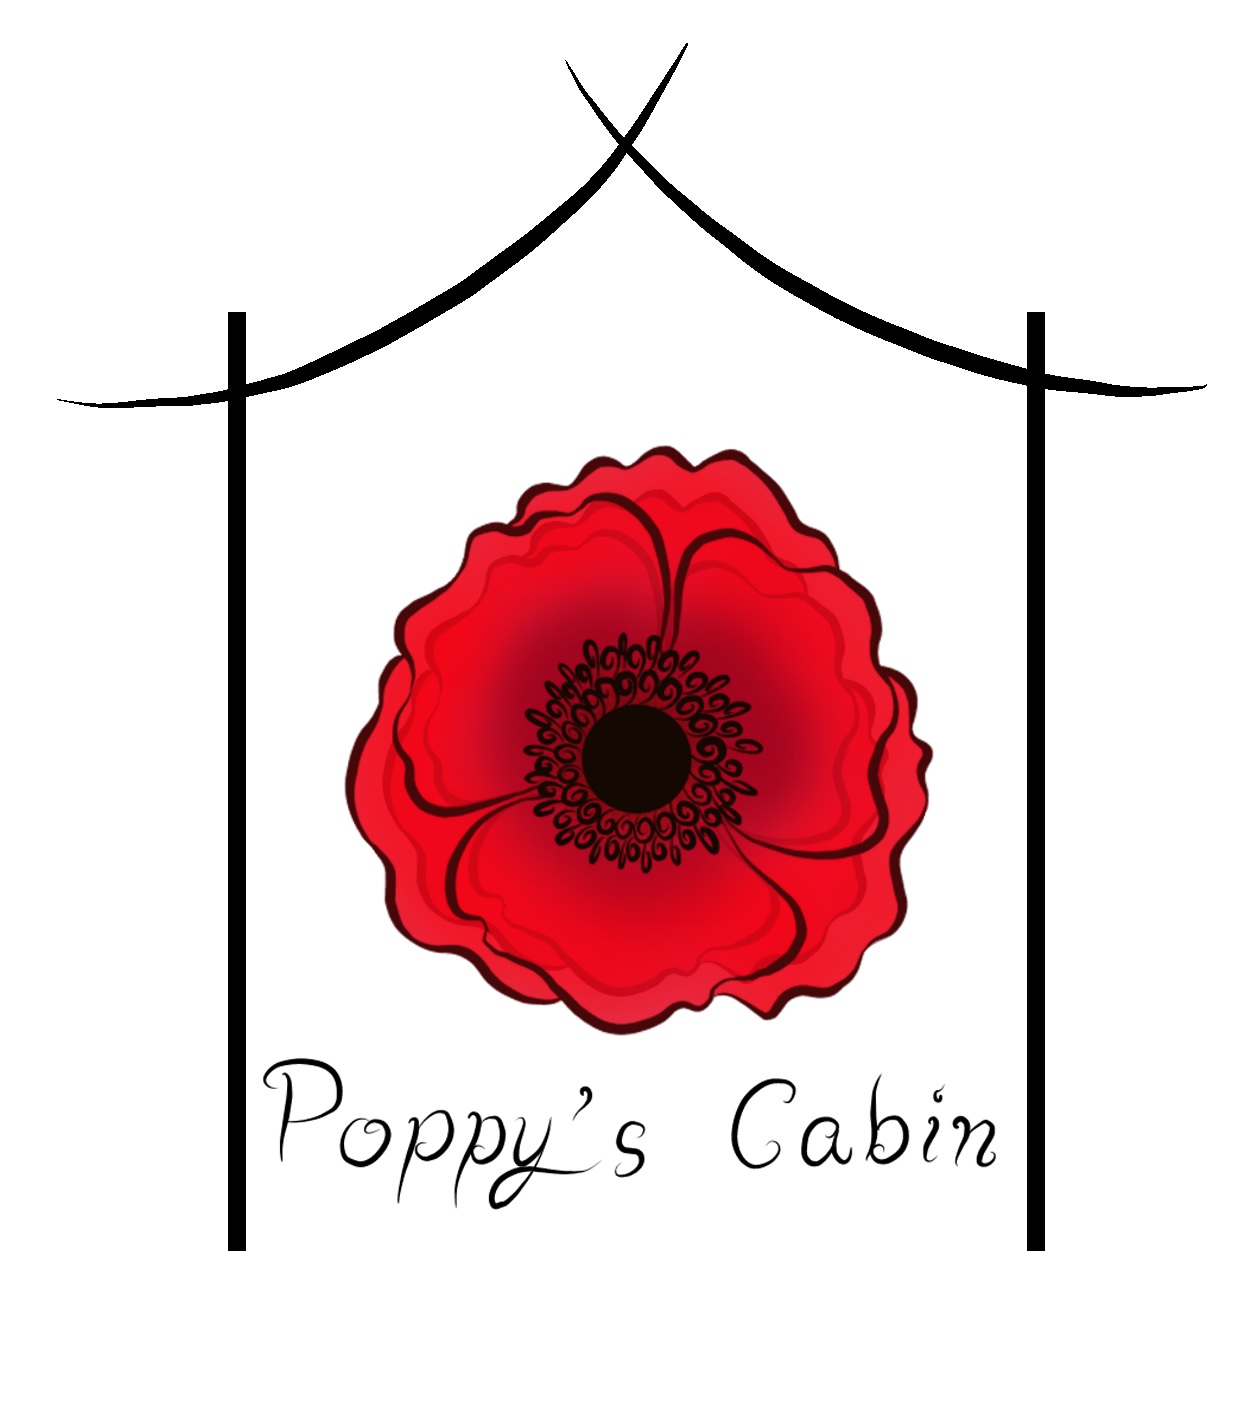 Poppy’s Cabin